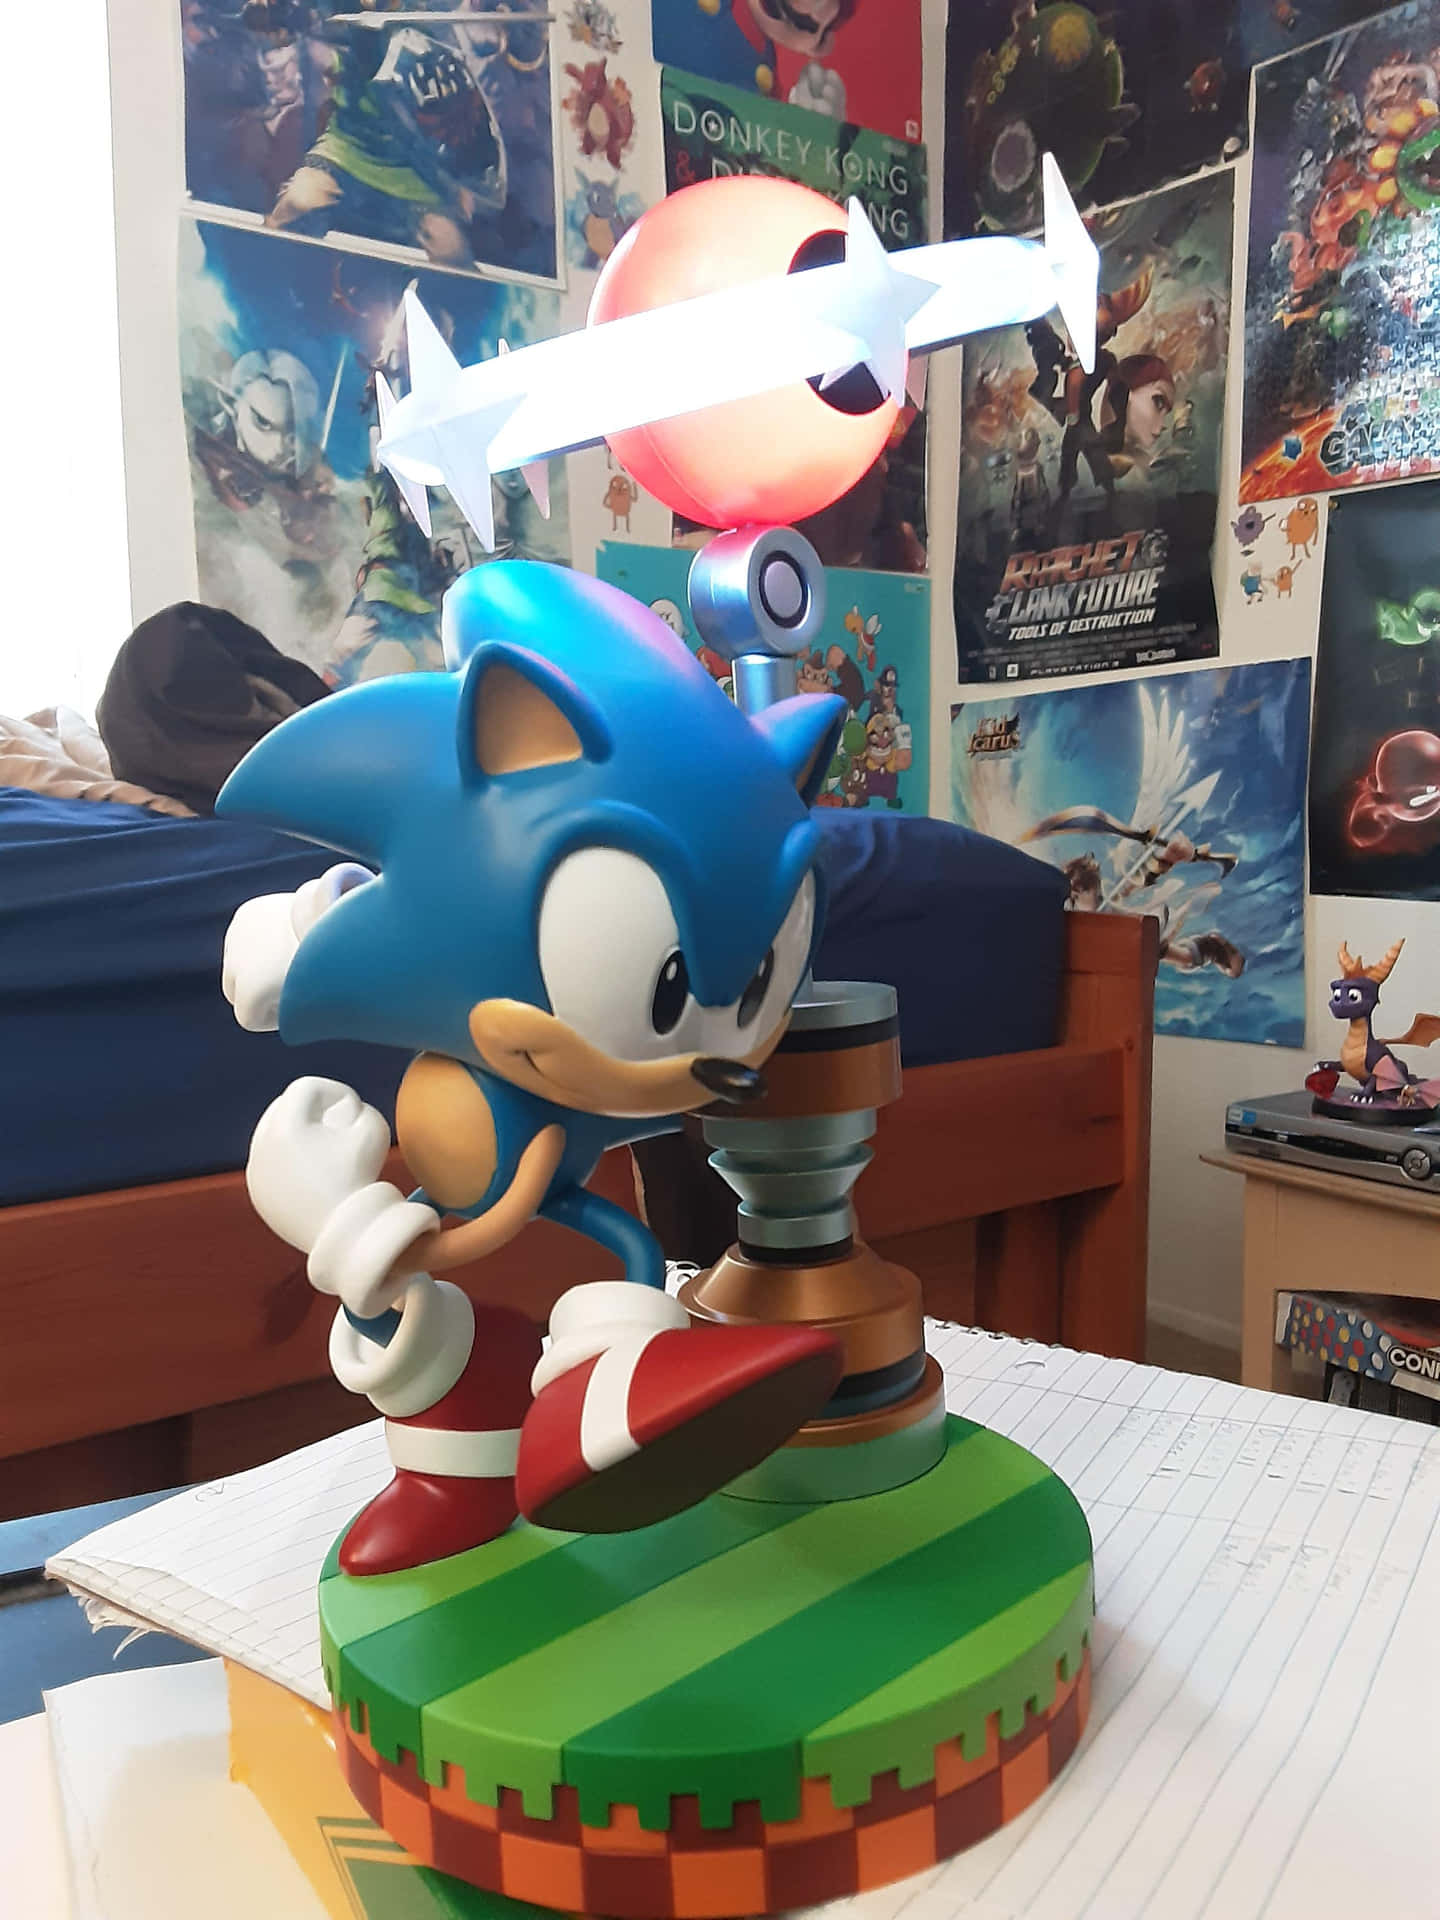 Sonic The Hedgehog der viser sin hastighed.